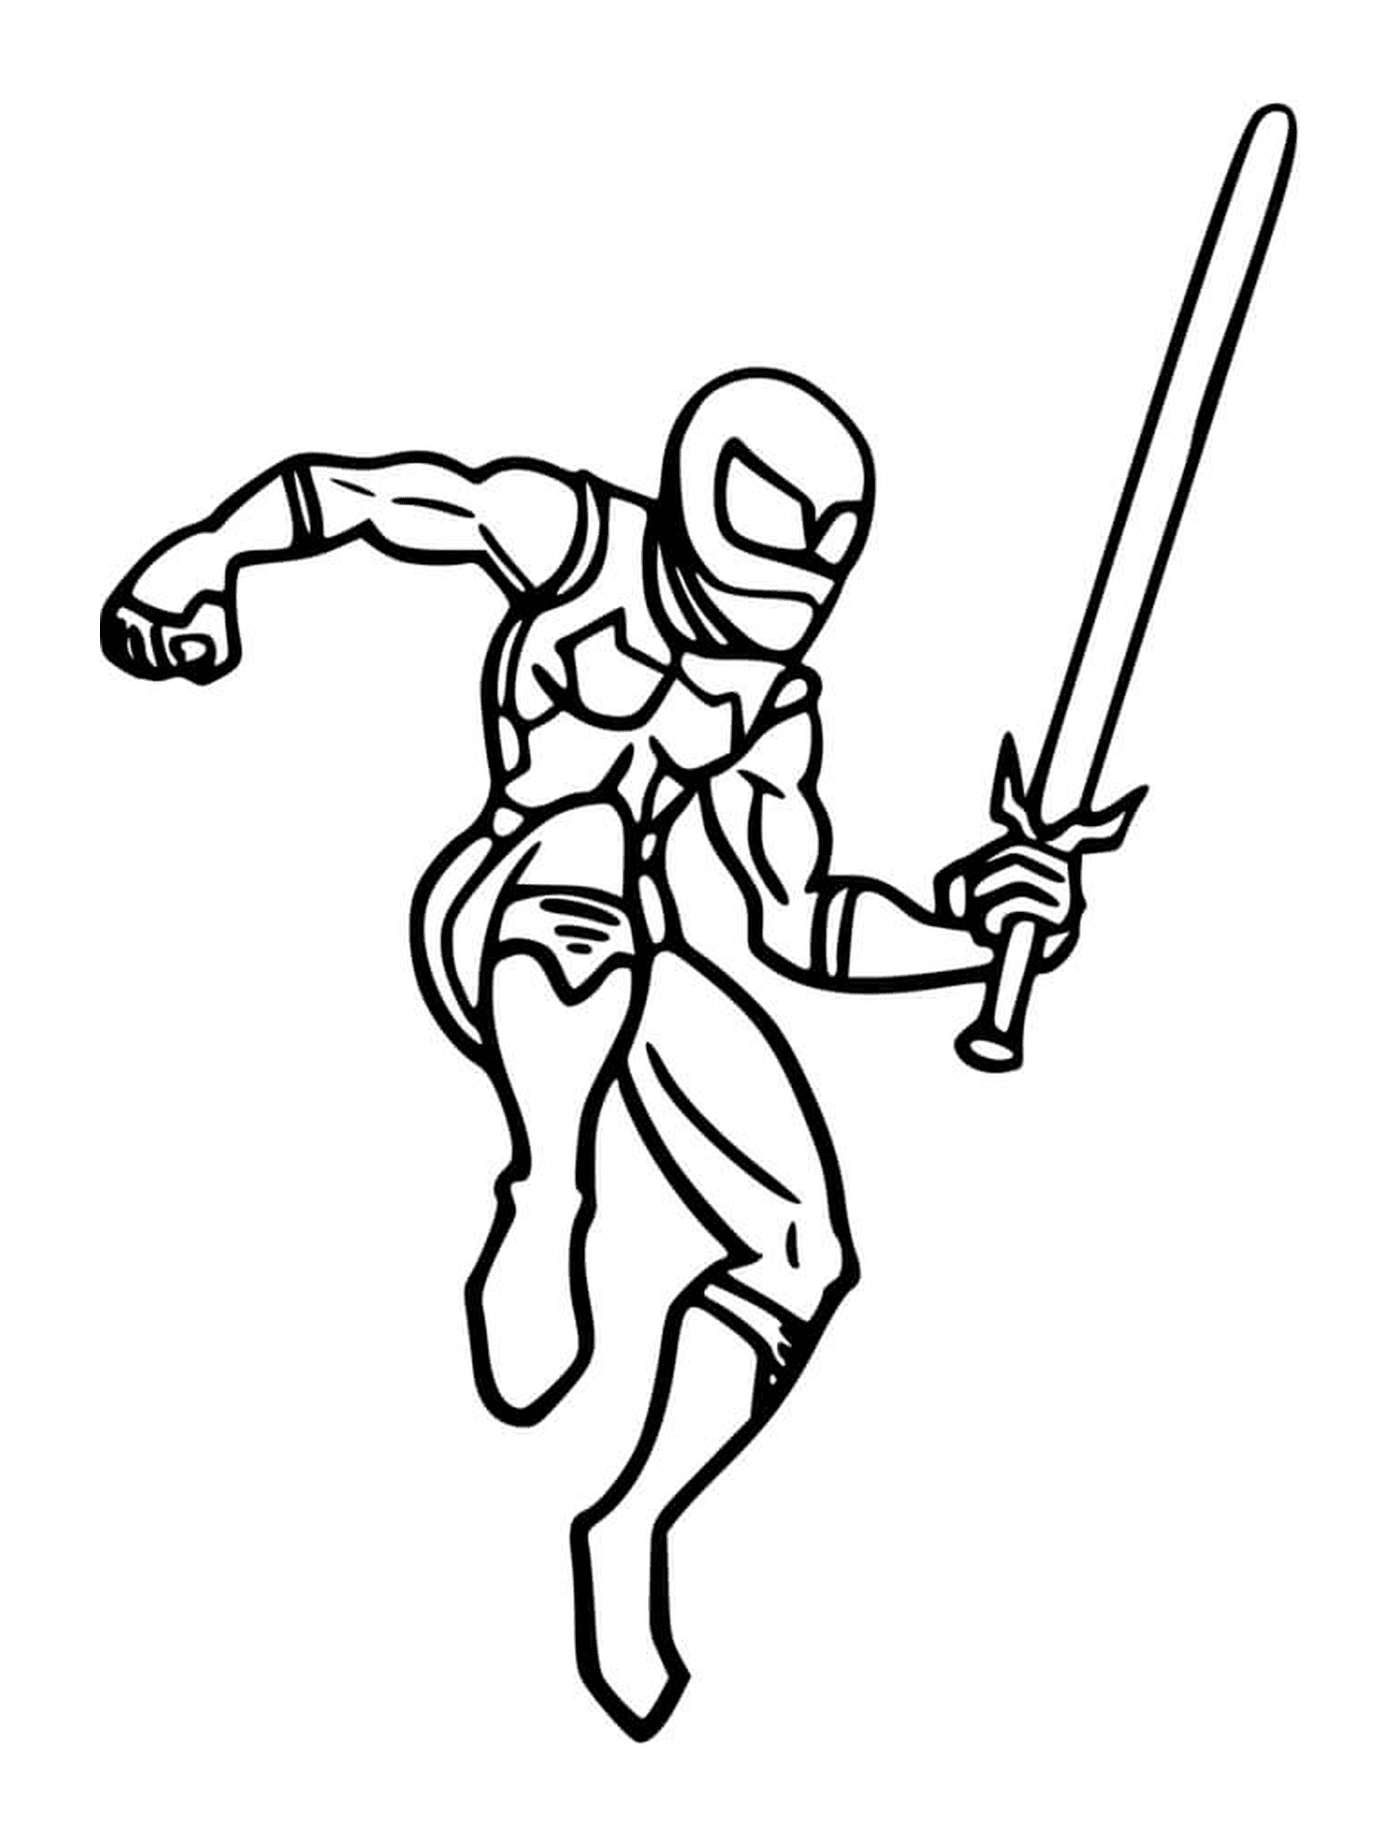  Ninja with a sword 